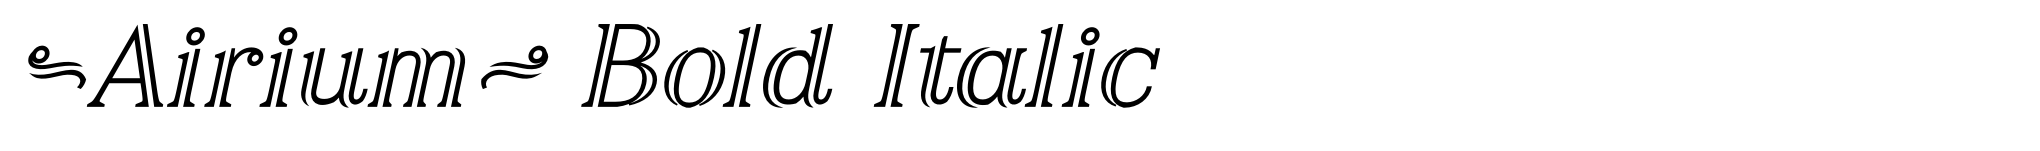 Airium Bold Italic image